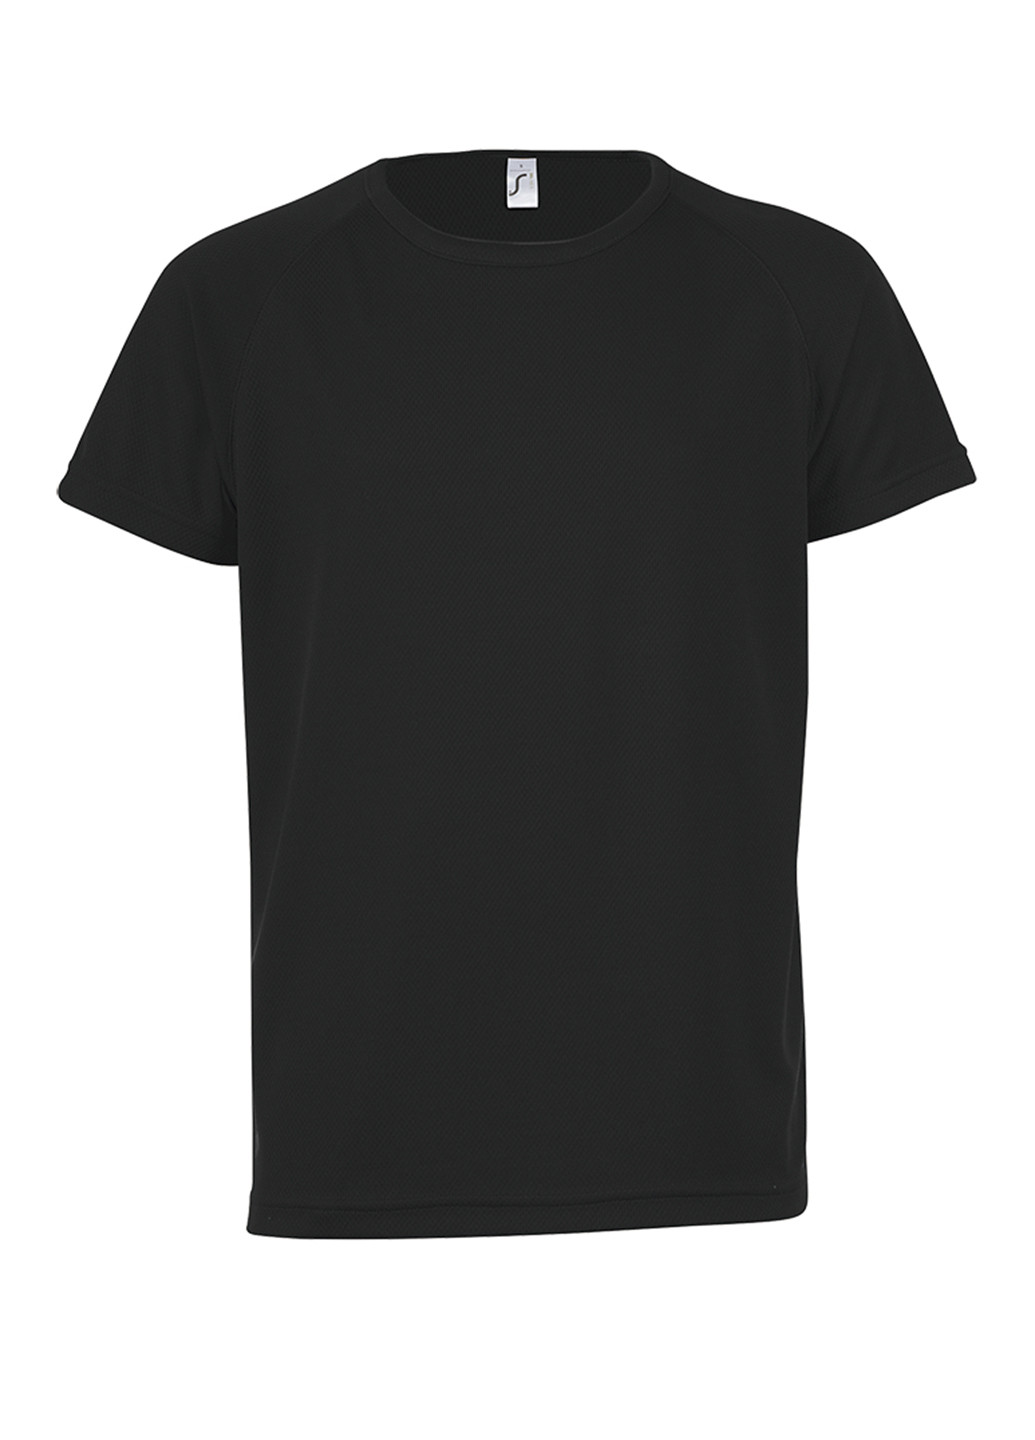 Черная демисезонная футболка с коротким рукавом Sol's